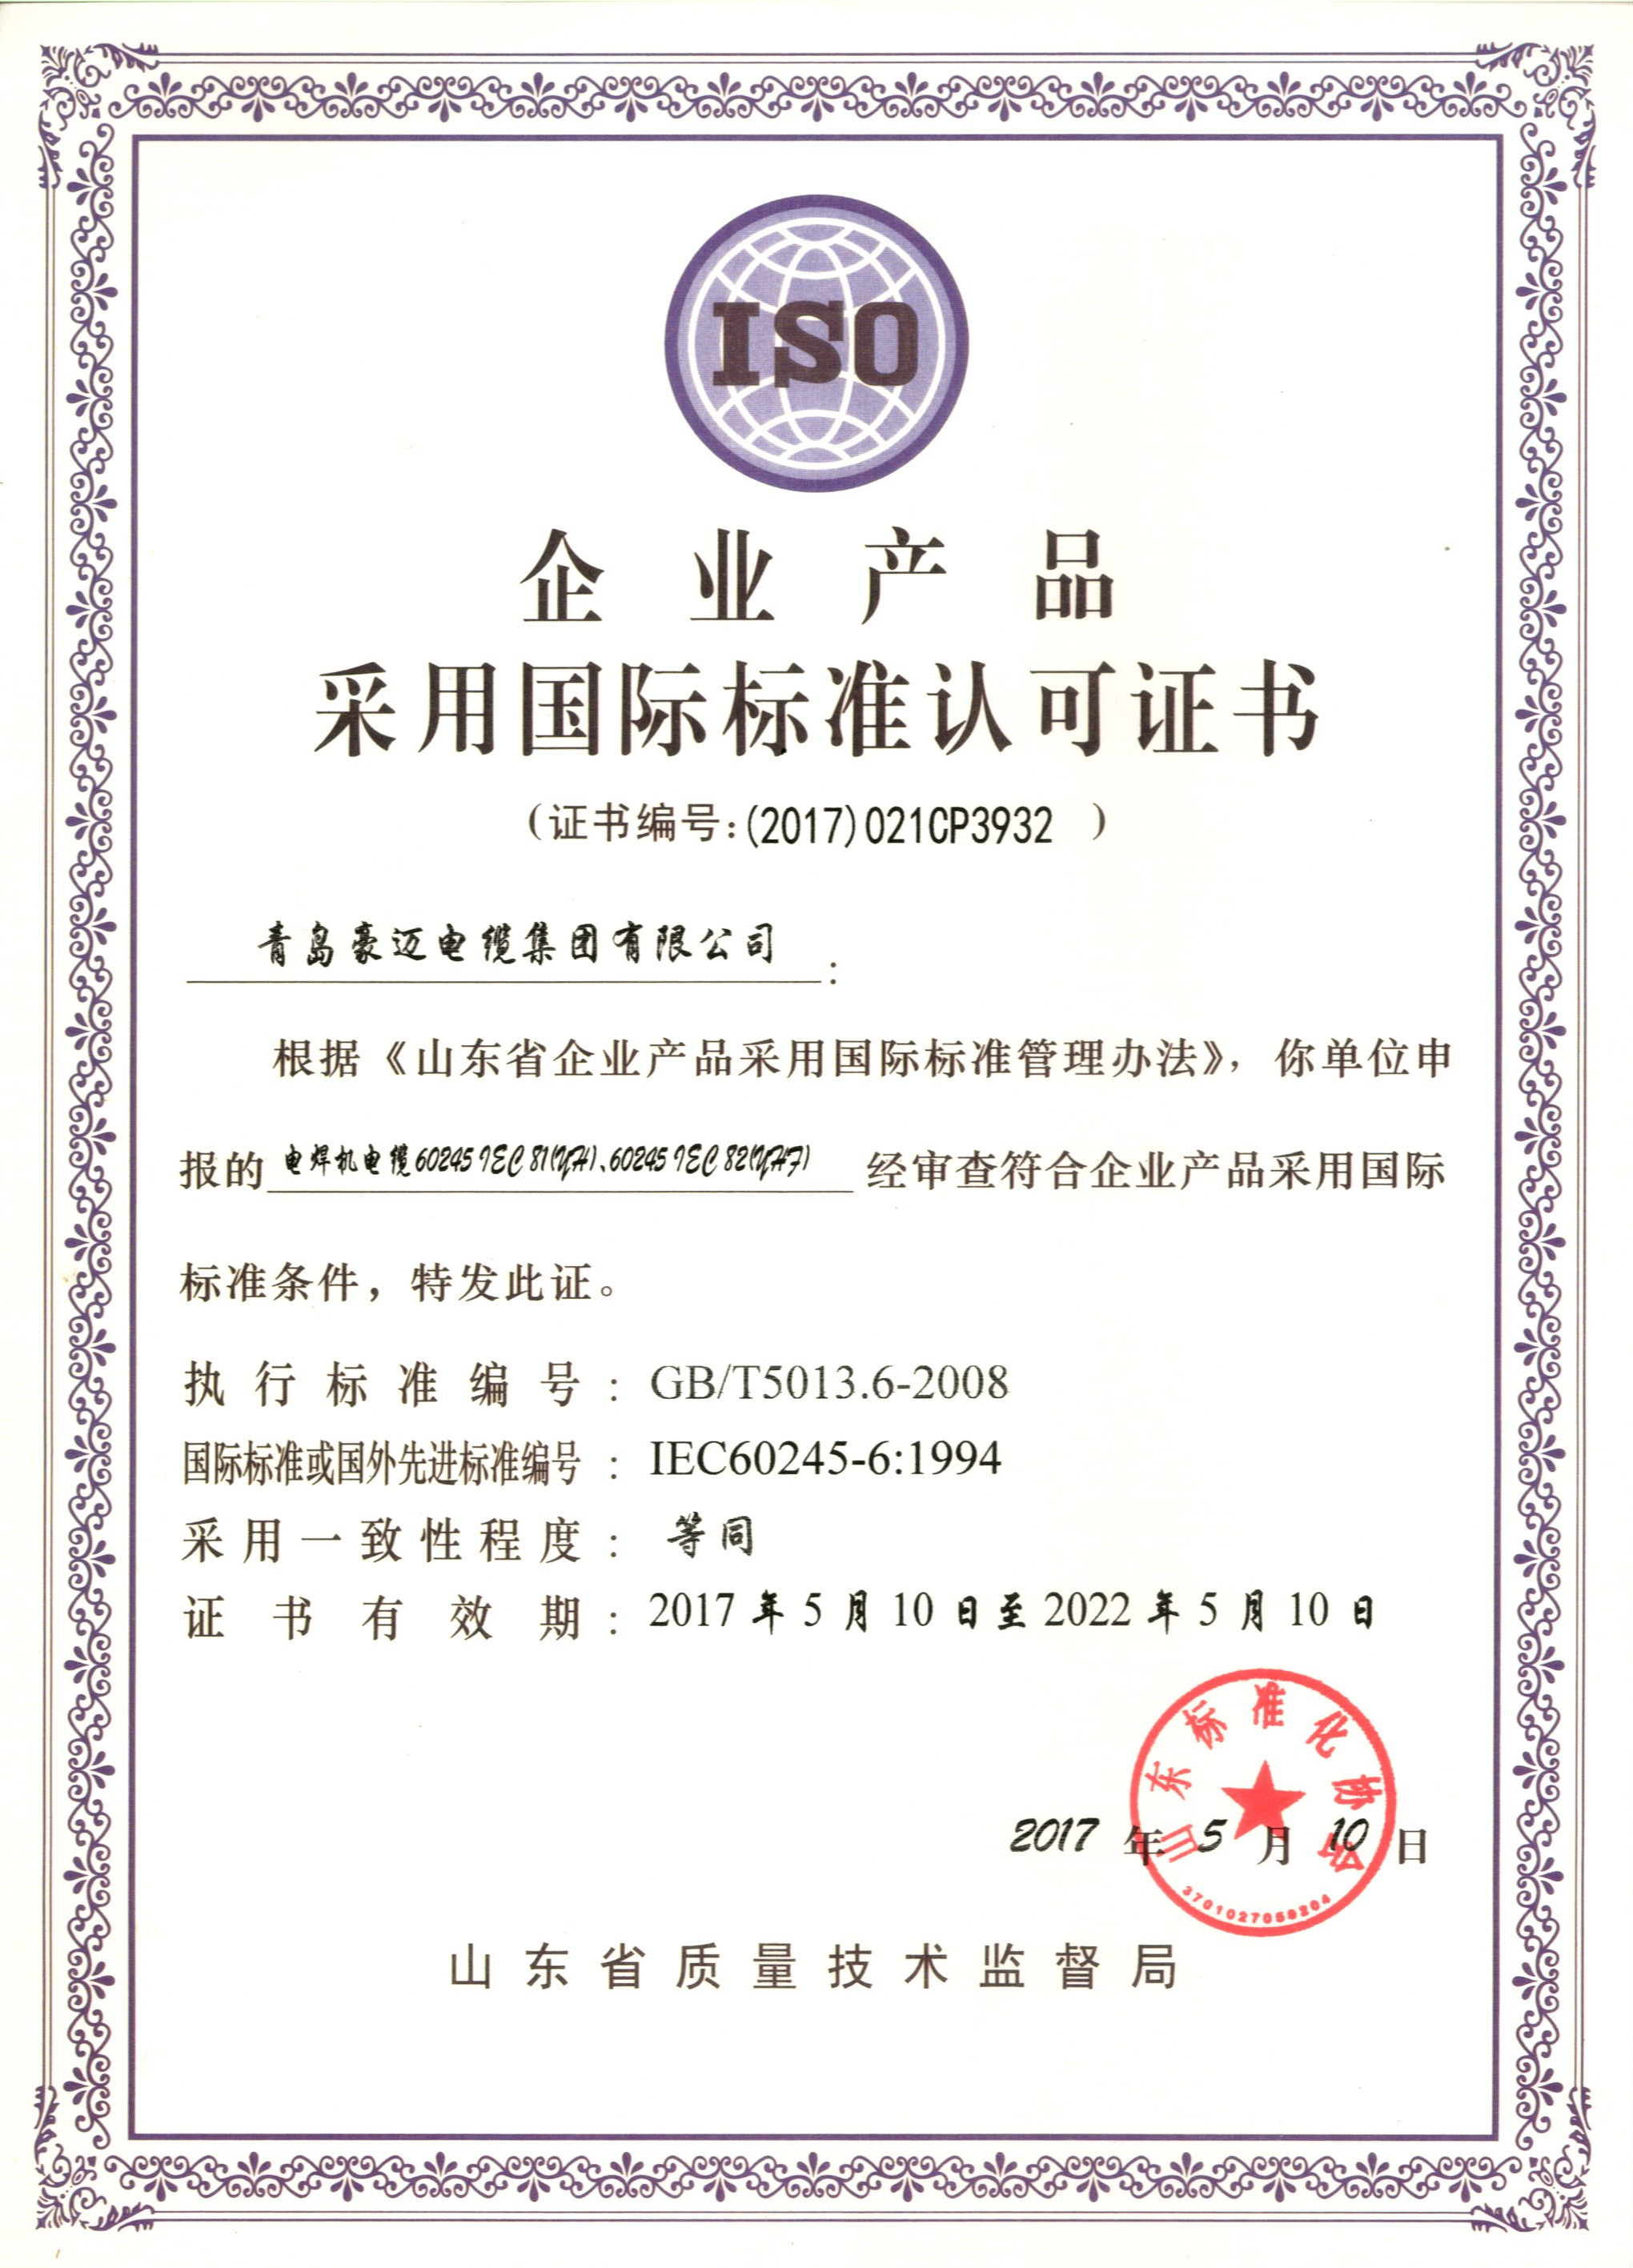 企业产品采用国际标准认可证书4